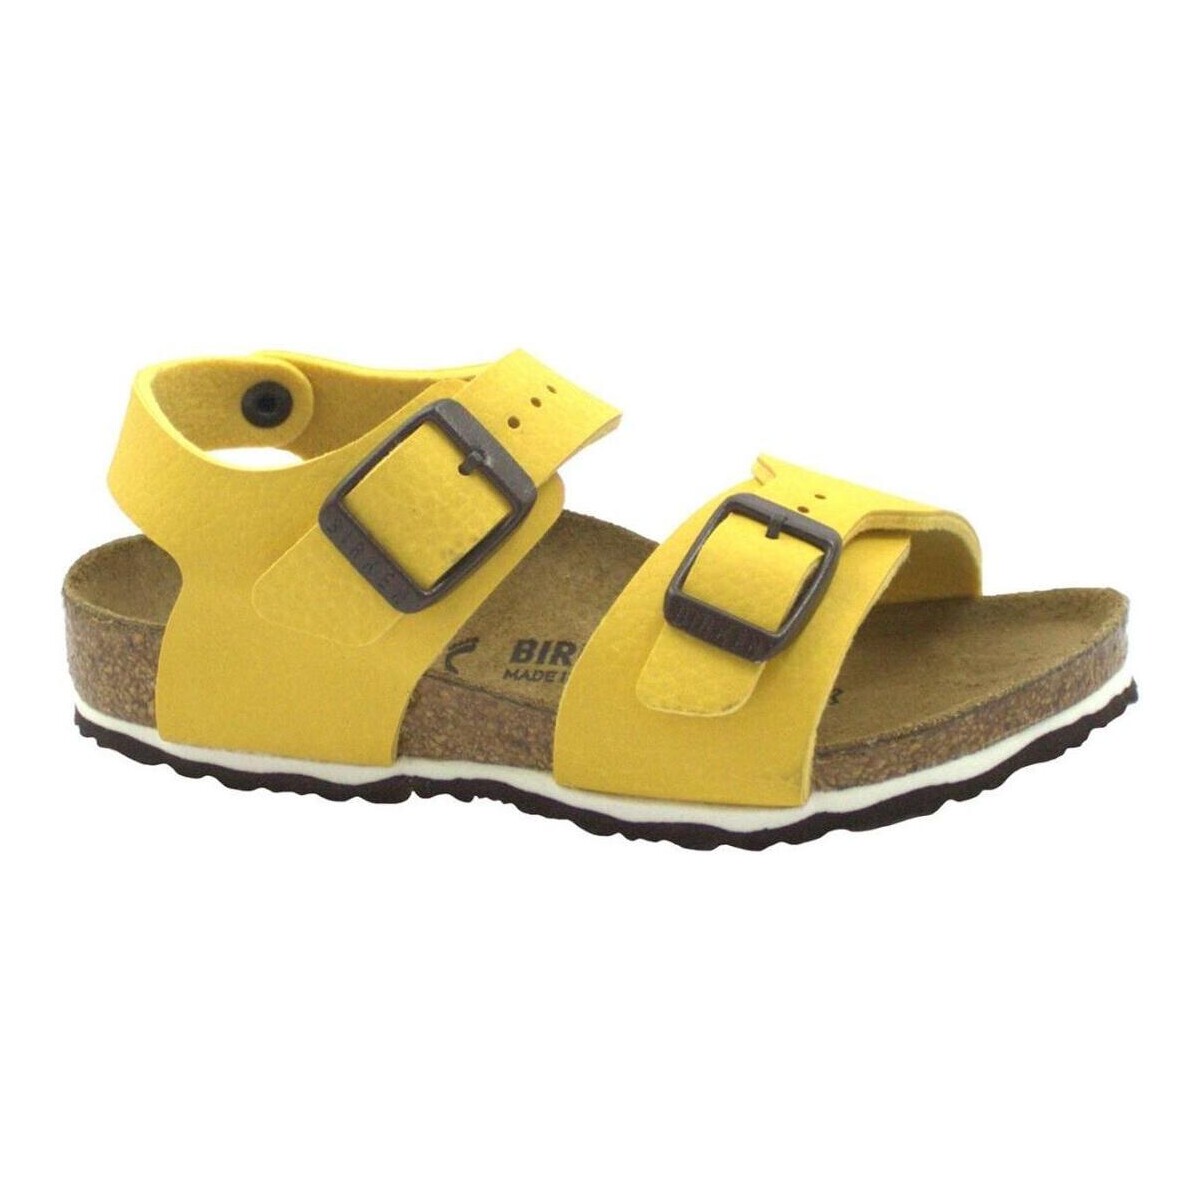 Chaussures Enfant Sandales et Nu-pieds Birkenstock BIR-RRR-1015758-DSVC Jaune